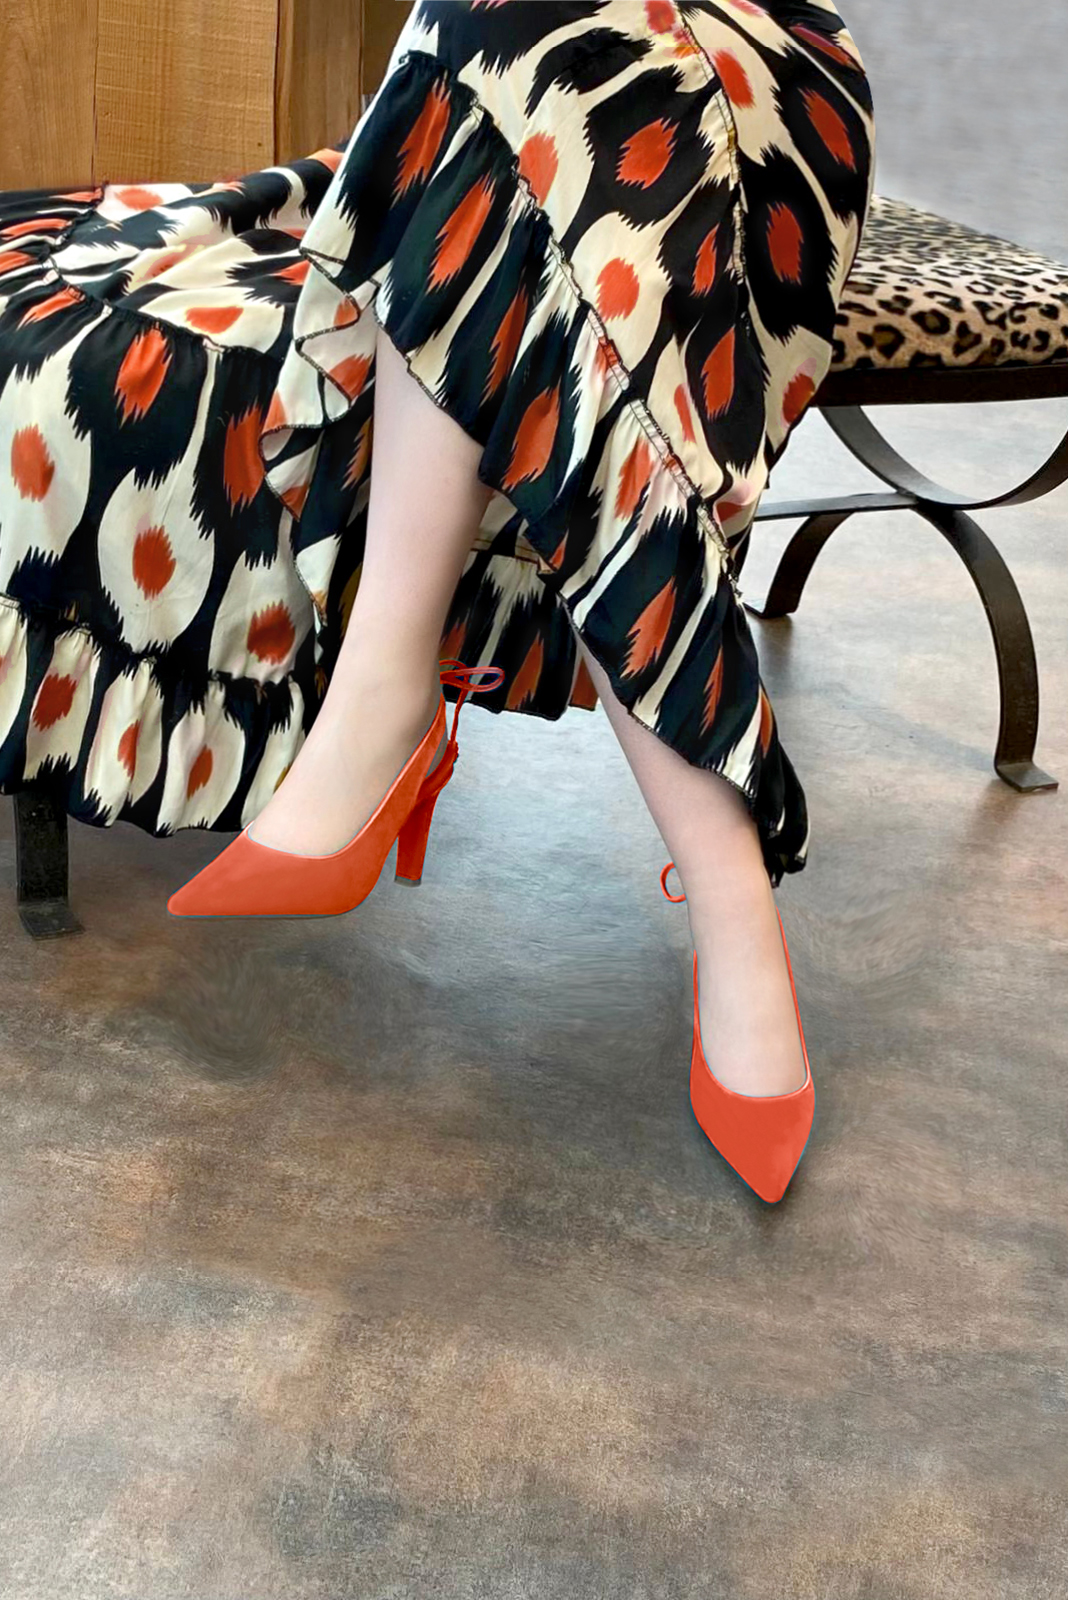 Chaussure femme à brides :  couleur orange clémentine. Bout pointu. Talon haut fin. Vue porté - Florence KOOIJMAN